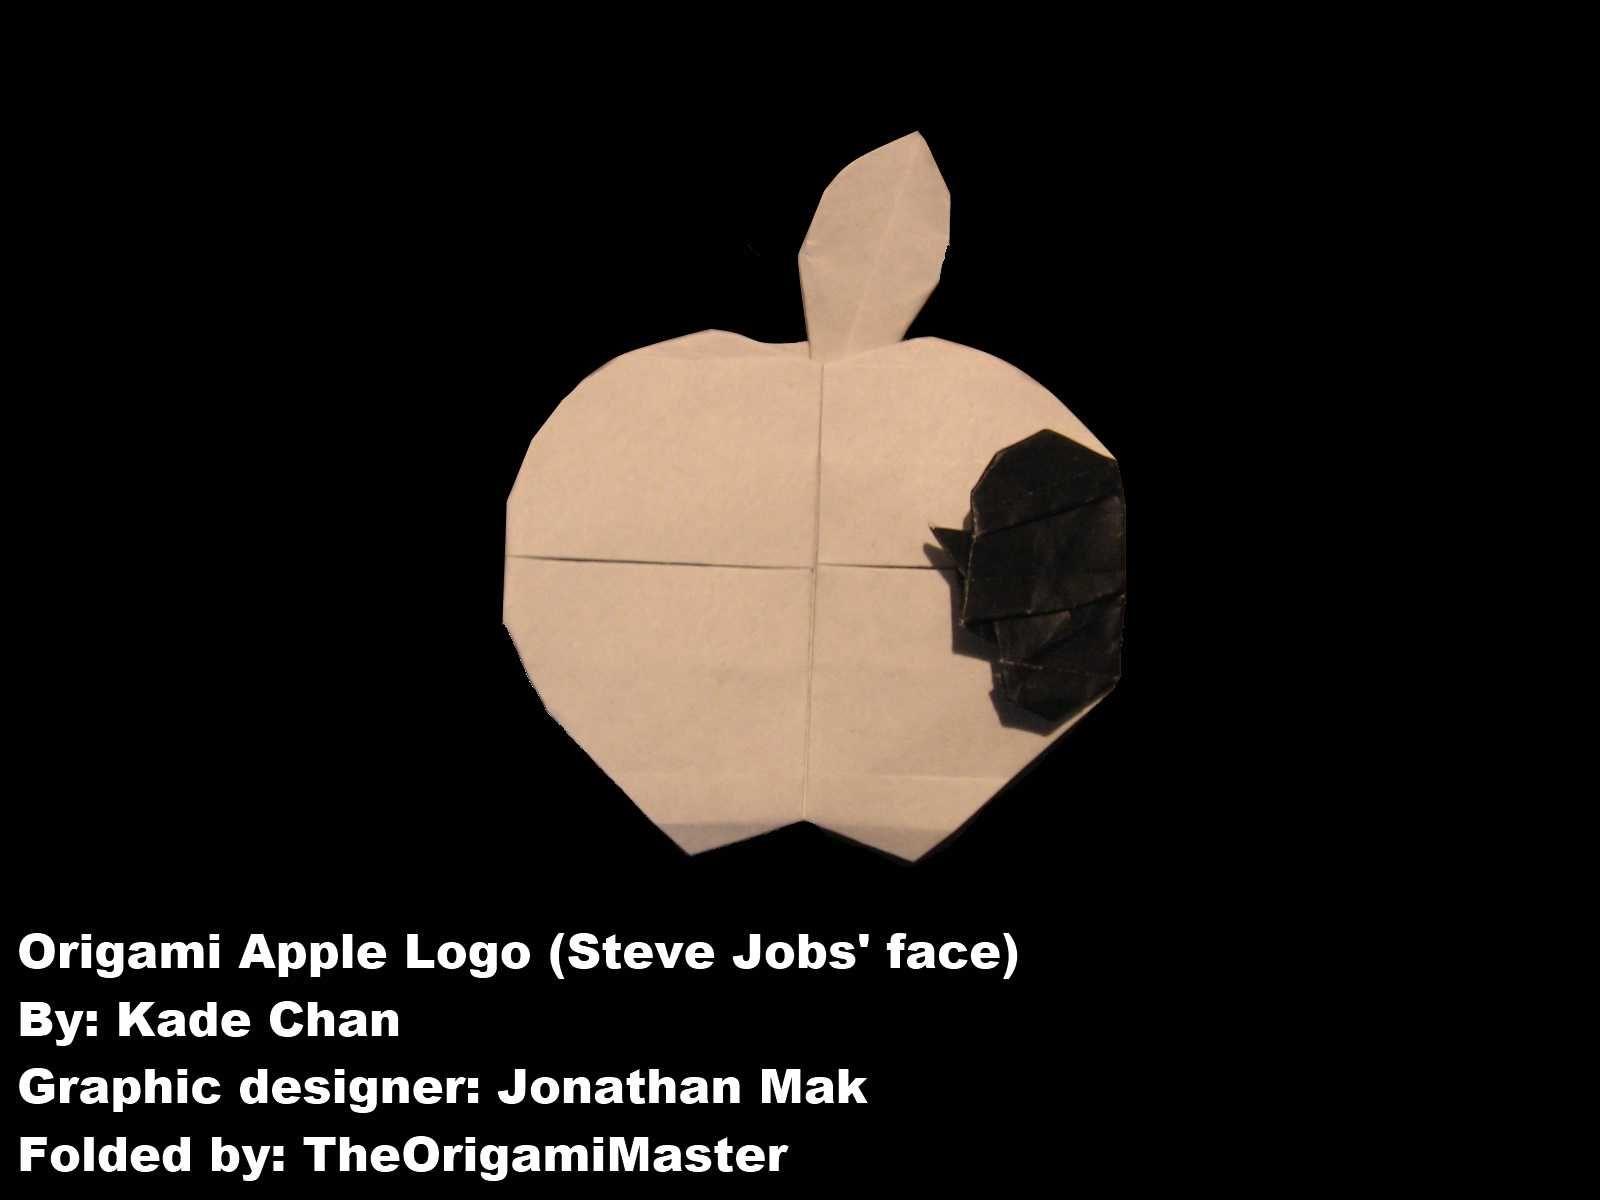 Steve Jobs Apple Logo - The Origami Master's Blog: Apple logo (Steve Jobs' face)